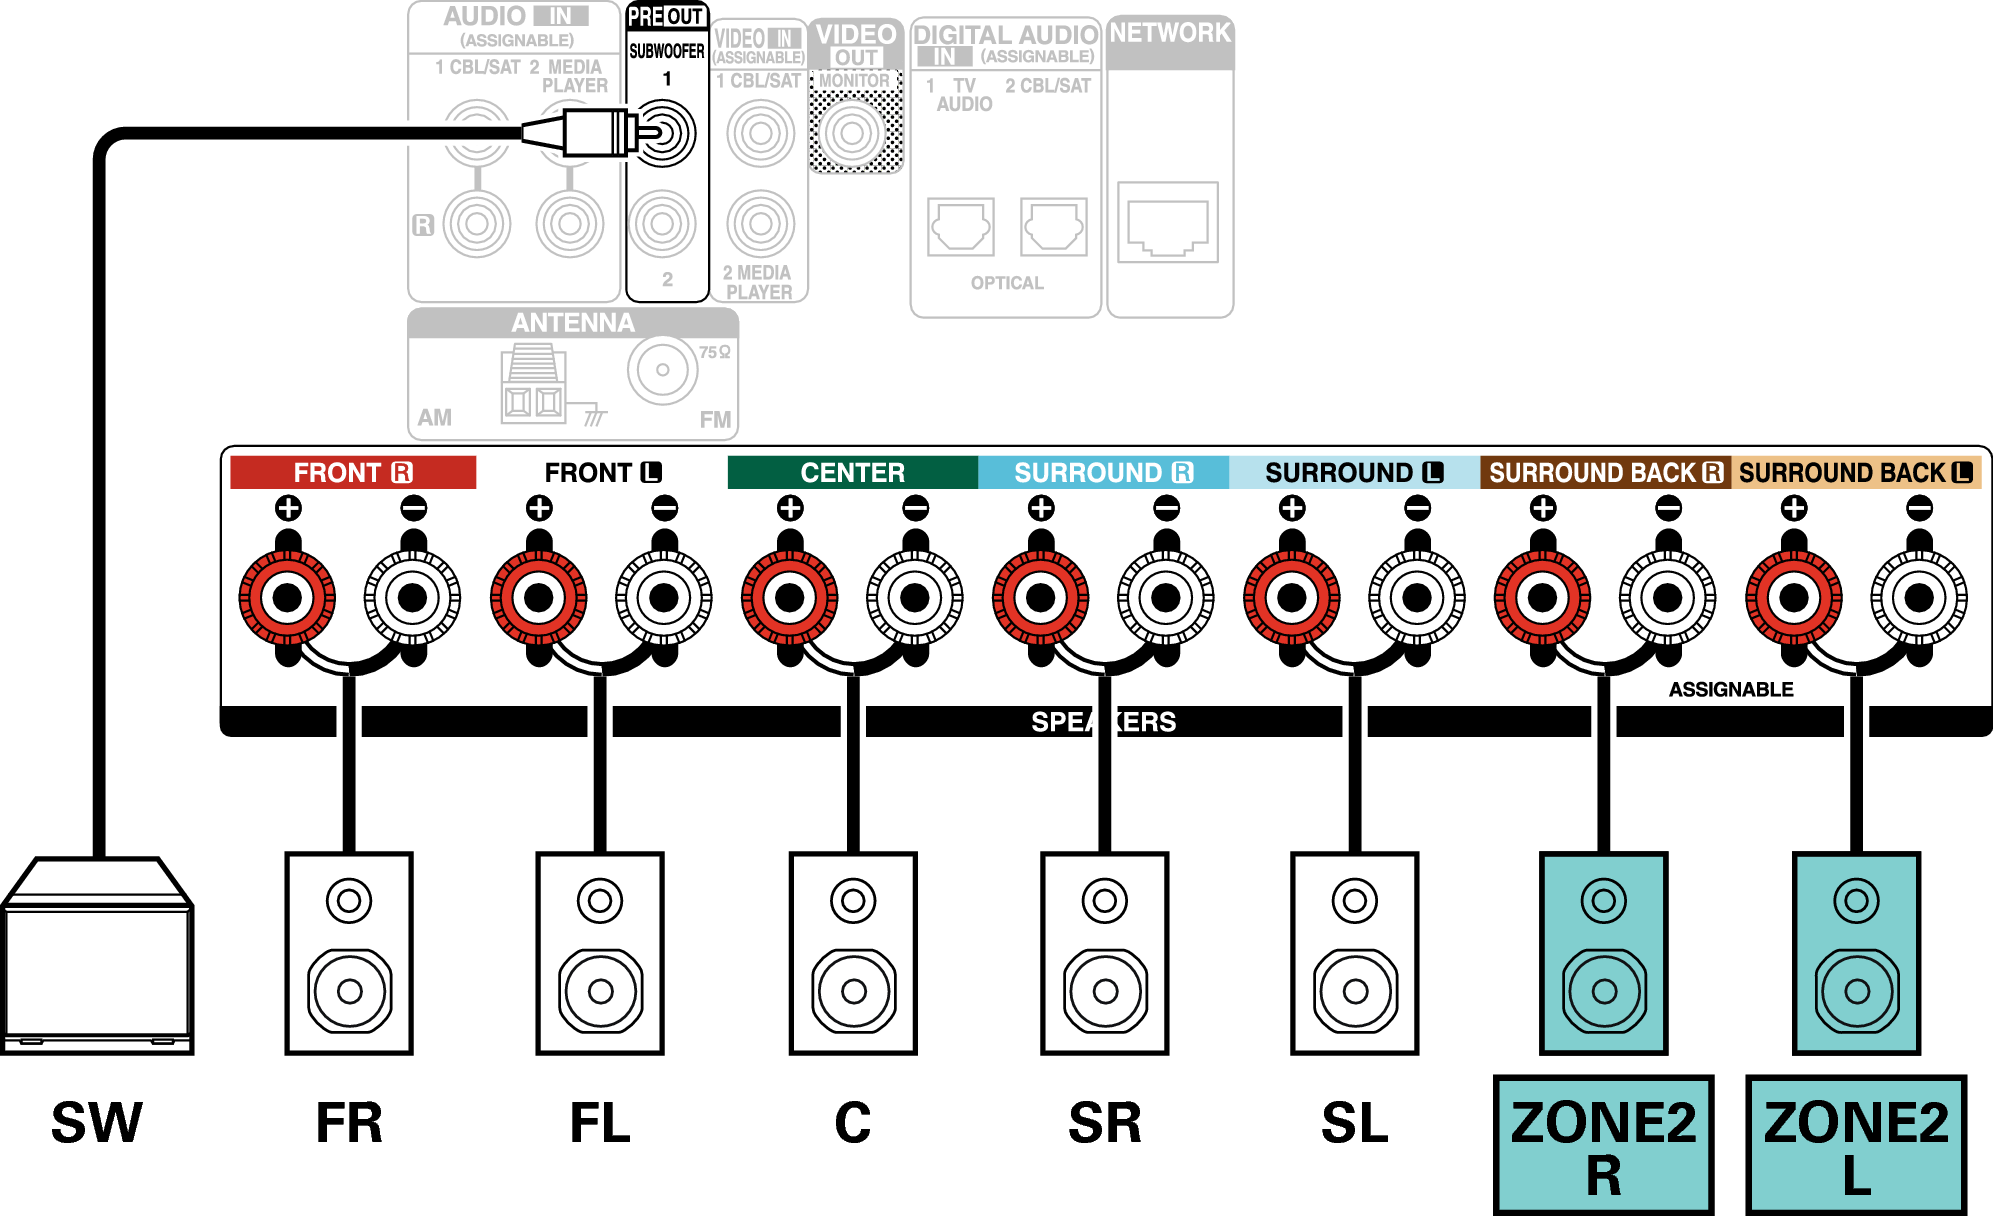 Conne SP 5.1 ZONE2 S76E2